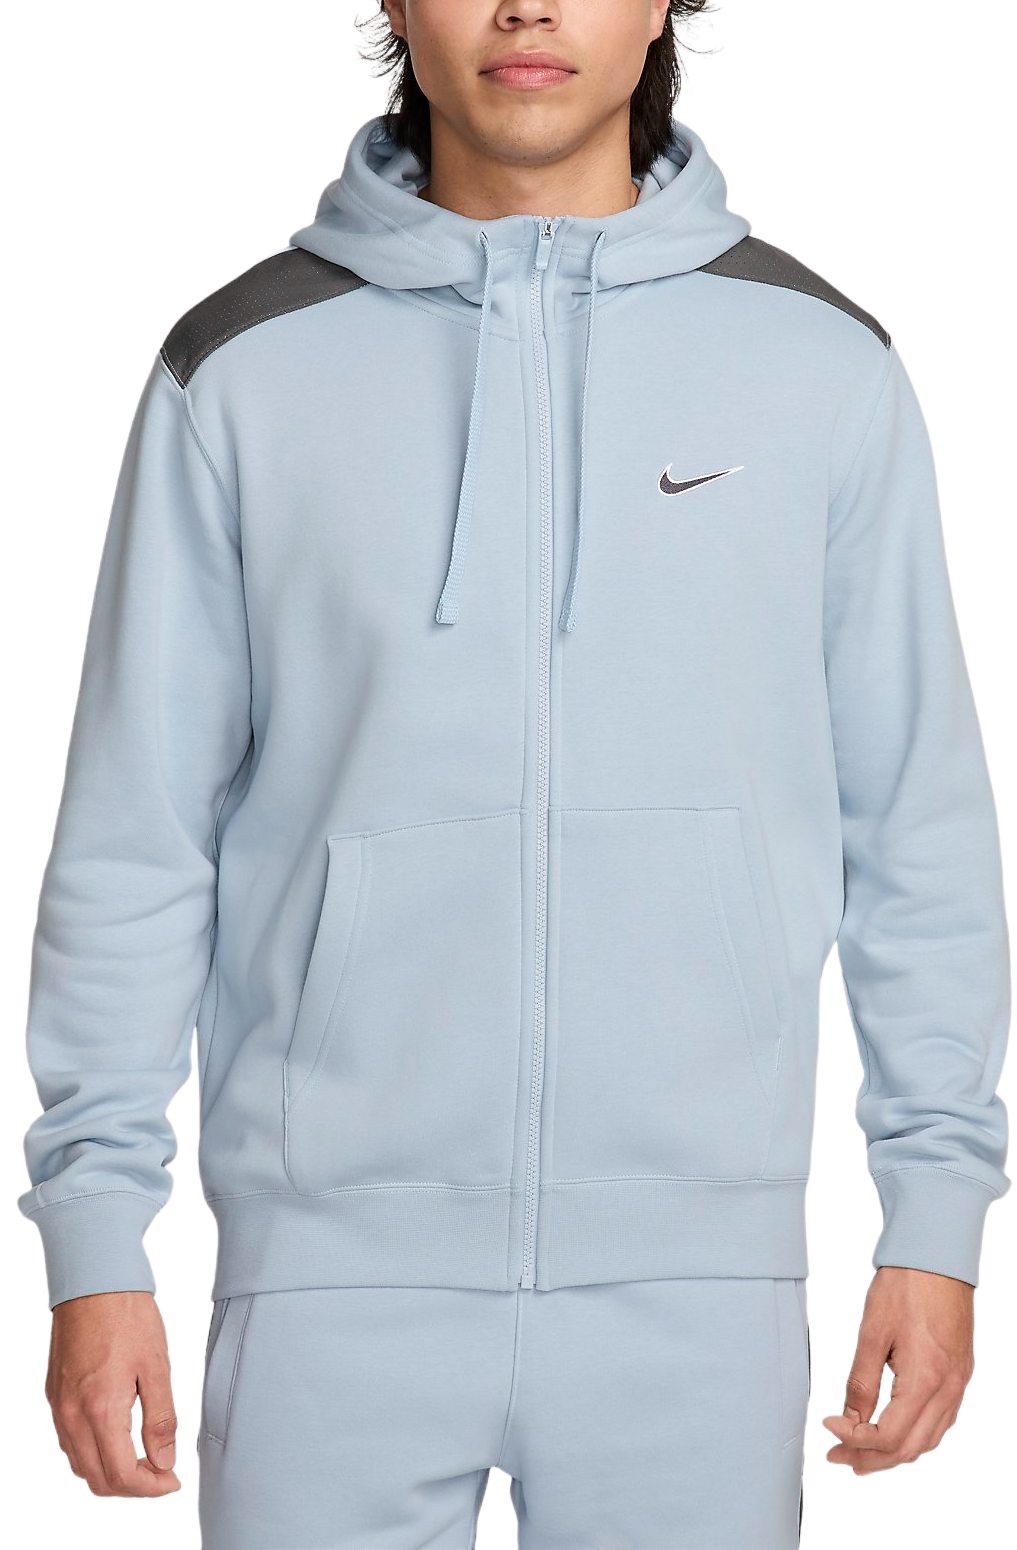 Pánská mikina s kapucí Nike Sportswear Fleece